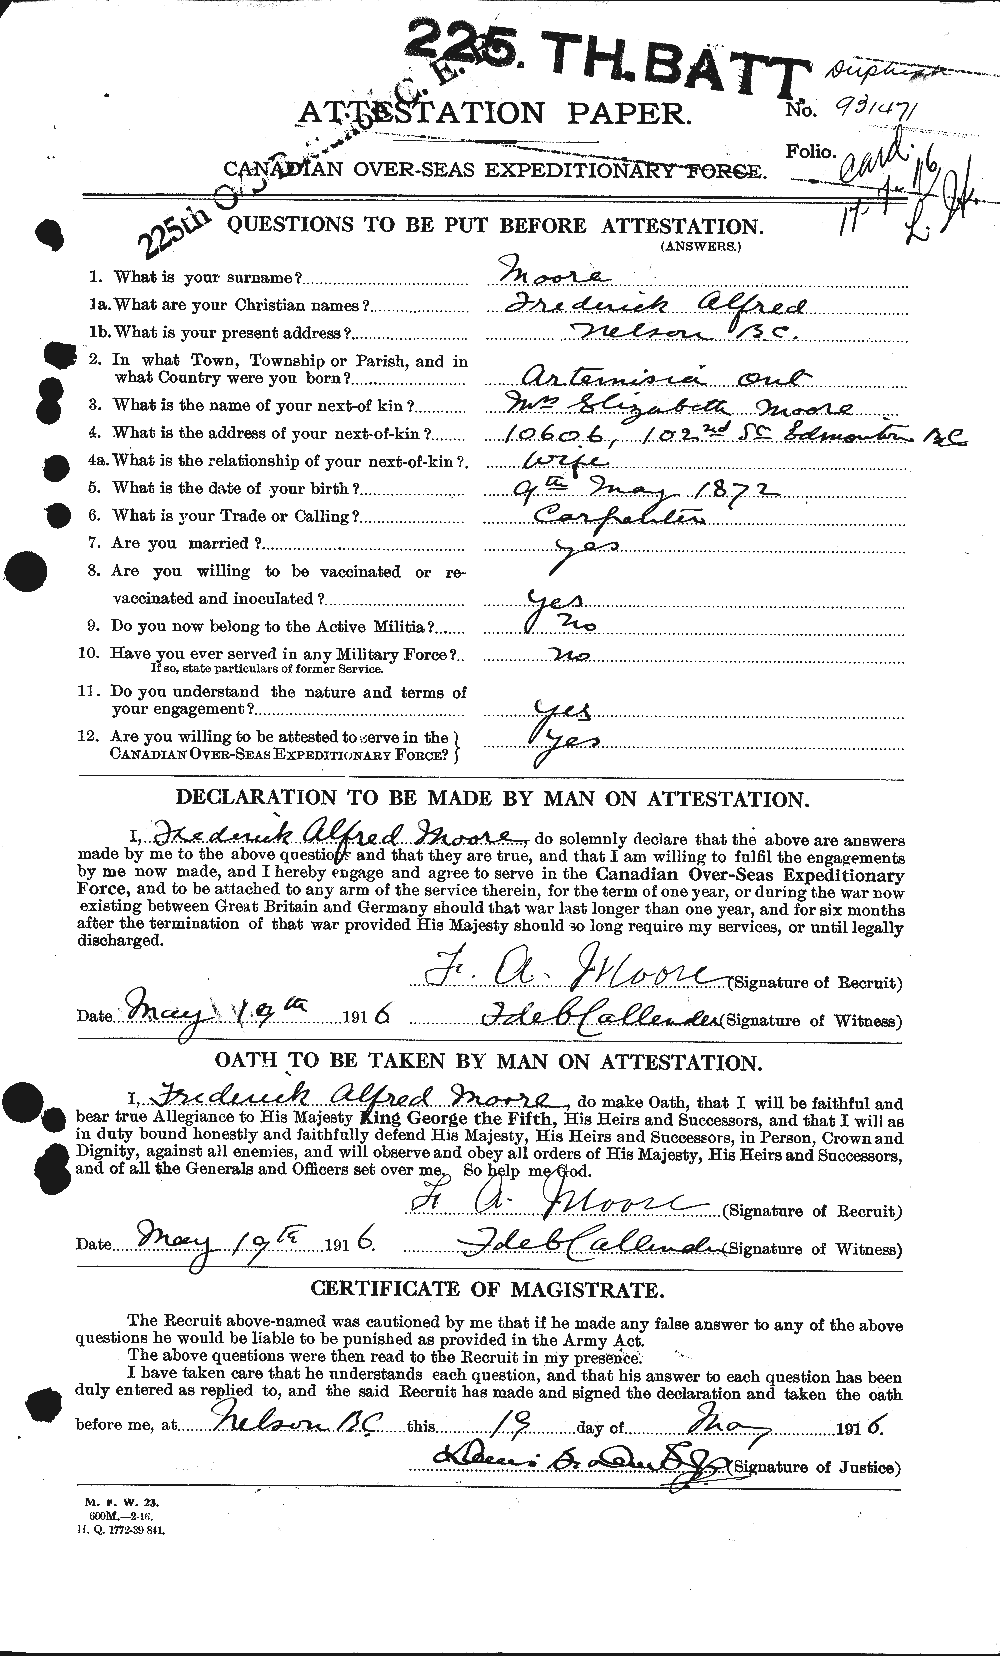 Dossiers du Personnel de la Première Guerre mondiale - CEC 506739a